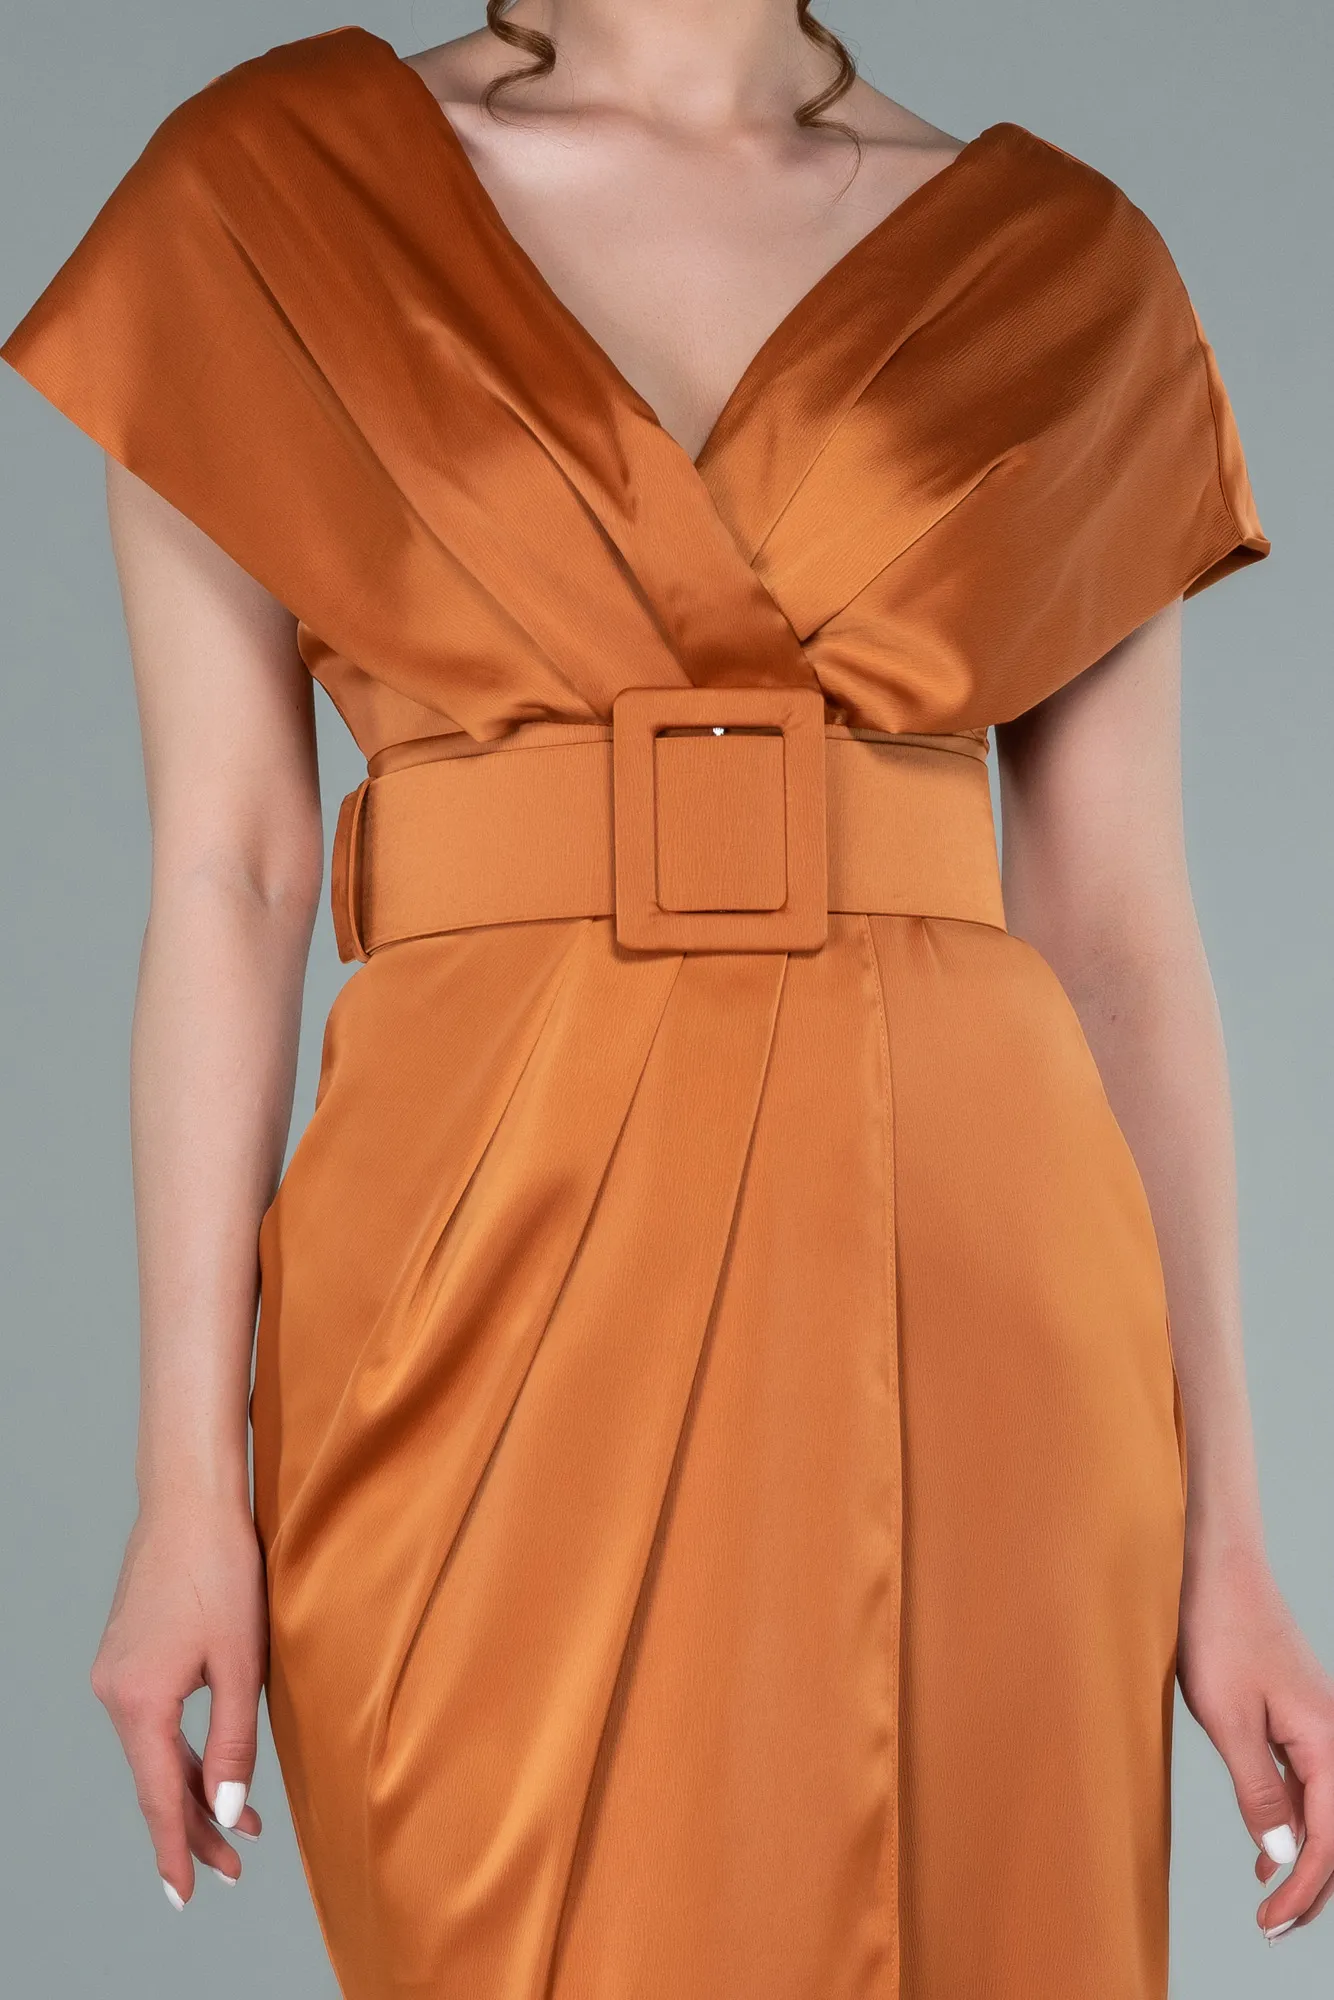 Orange-Short Satin Invitation Dress ABK1107